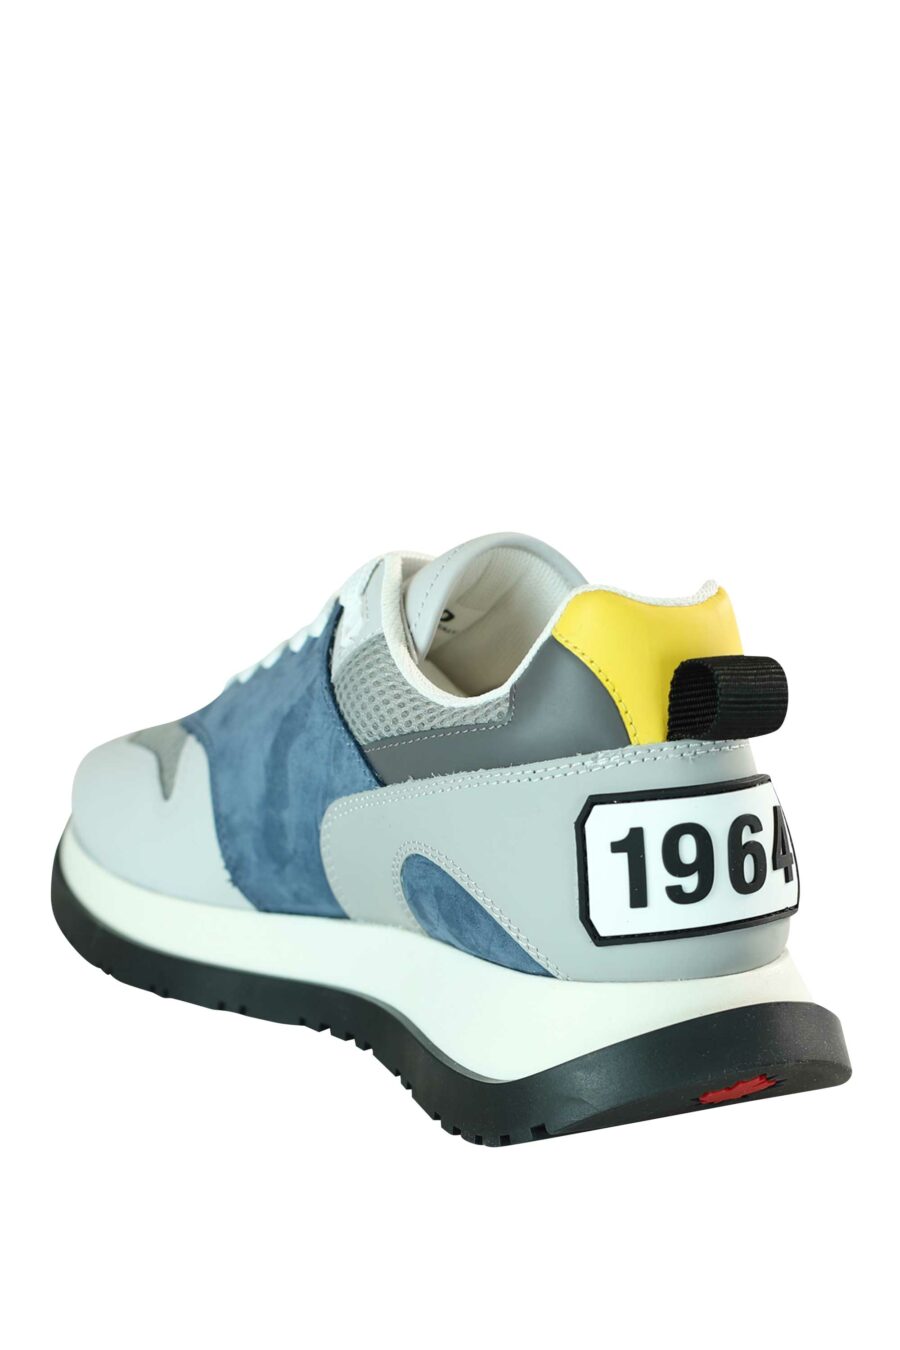 Chaussures de course multicolores bleues avec logo sur la semelle - 8055777205549 4